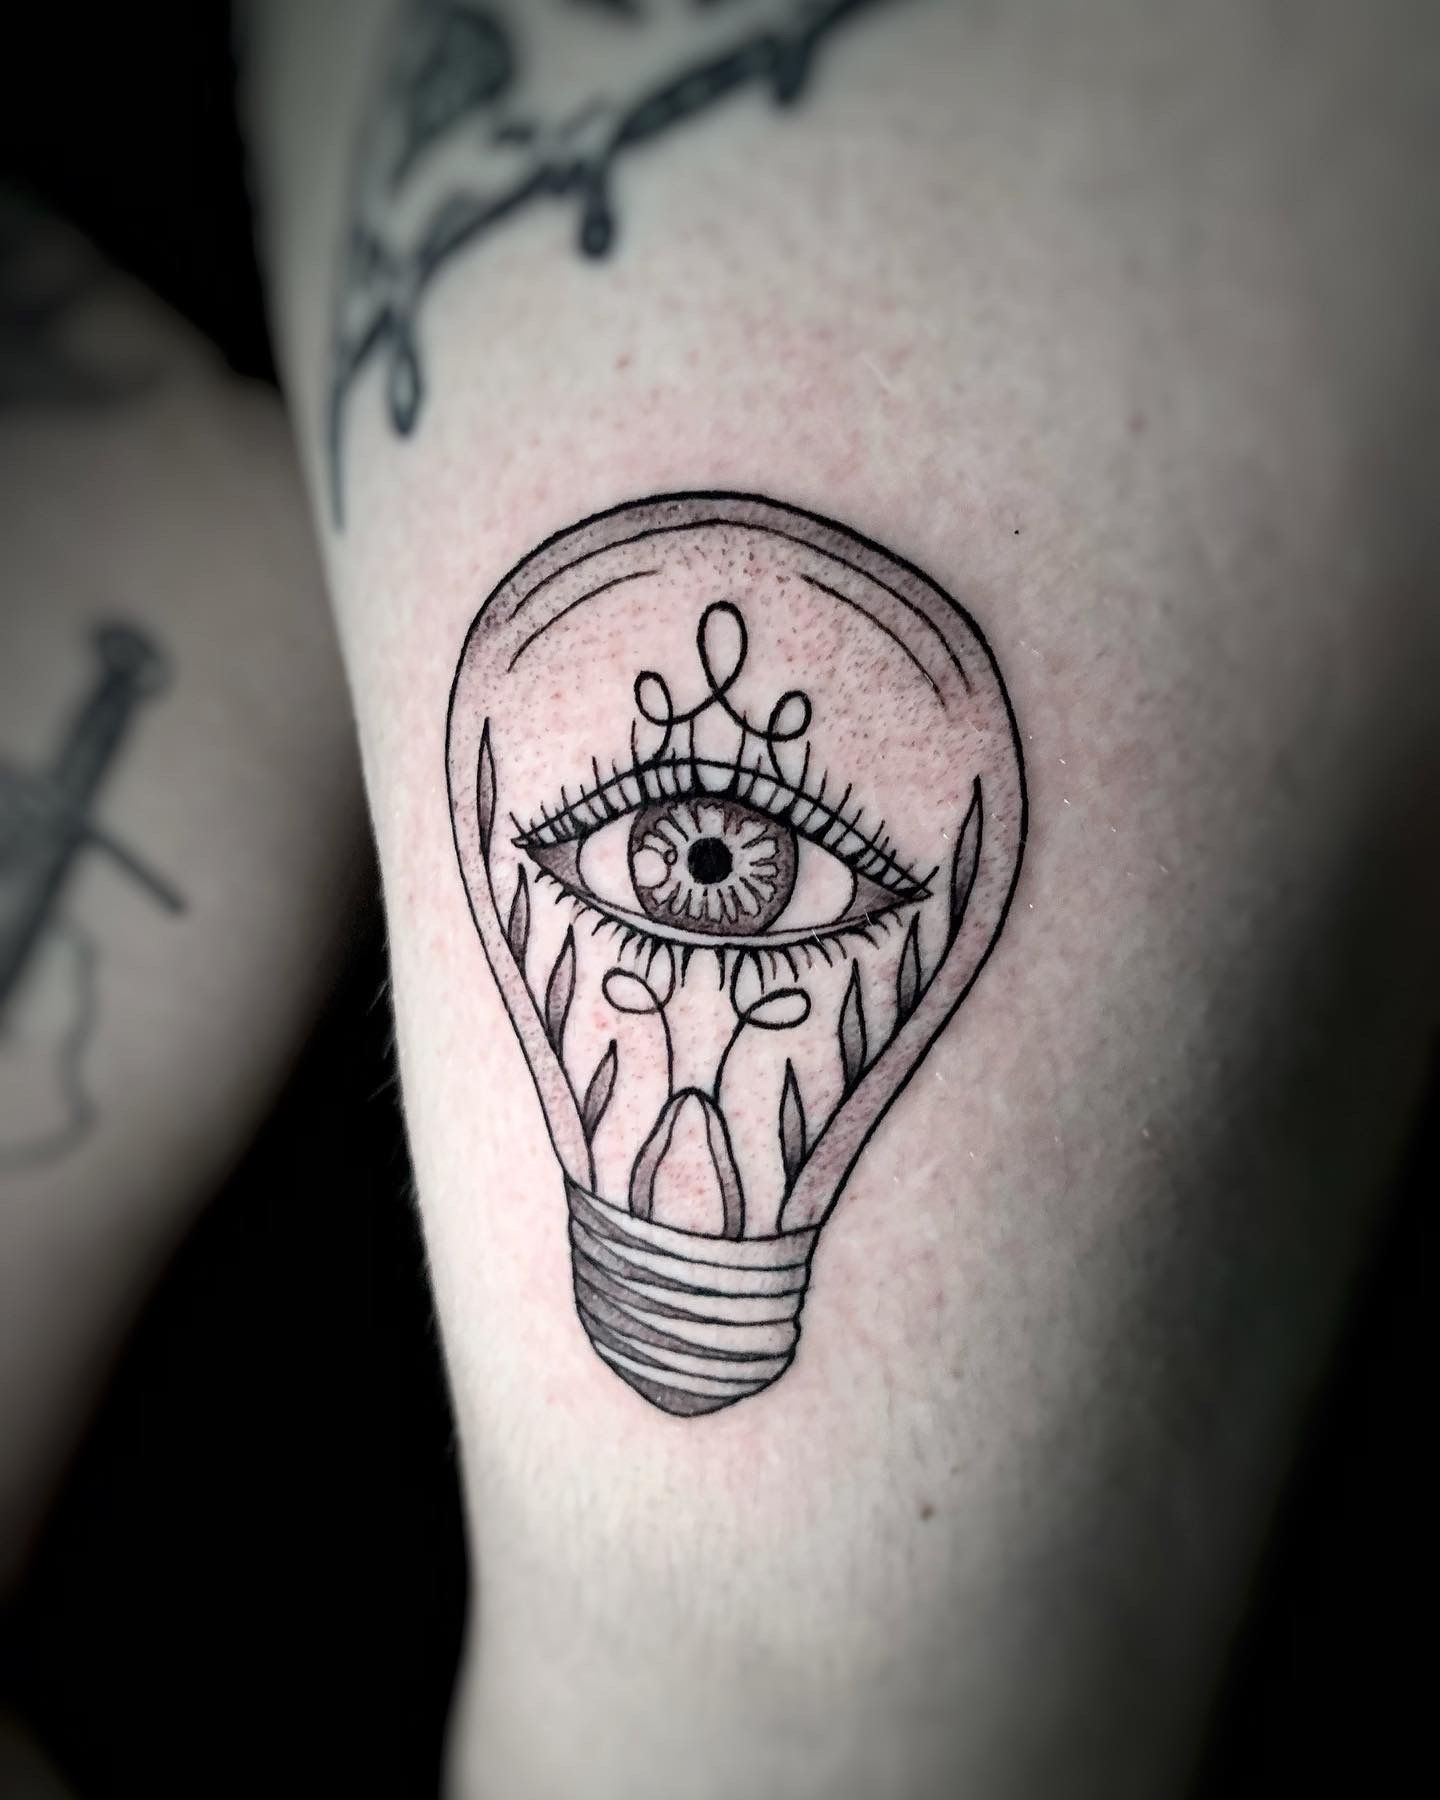 Light Bulb Tattoo - Best Tattoo Ideas Gallery